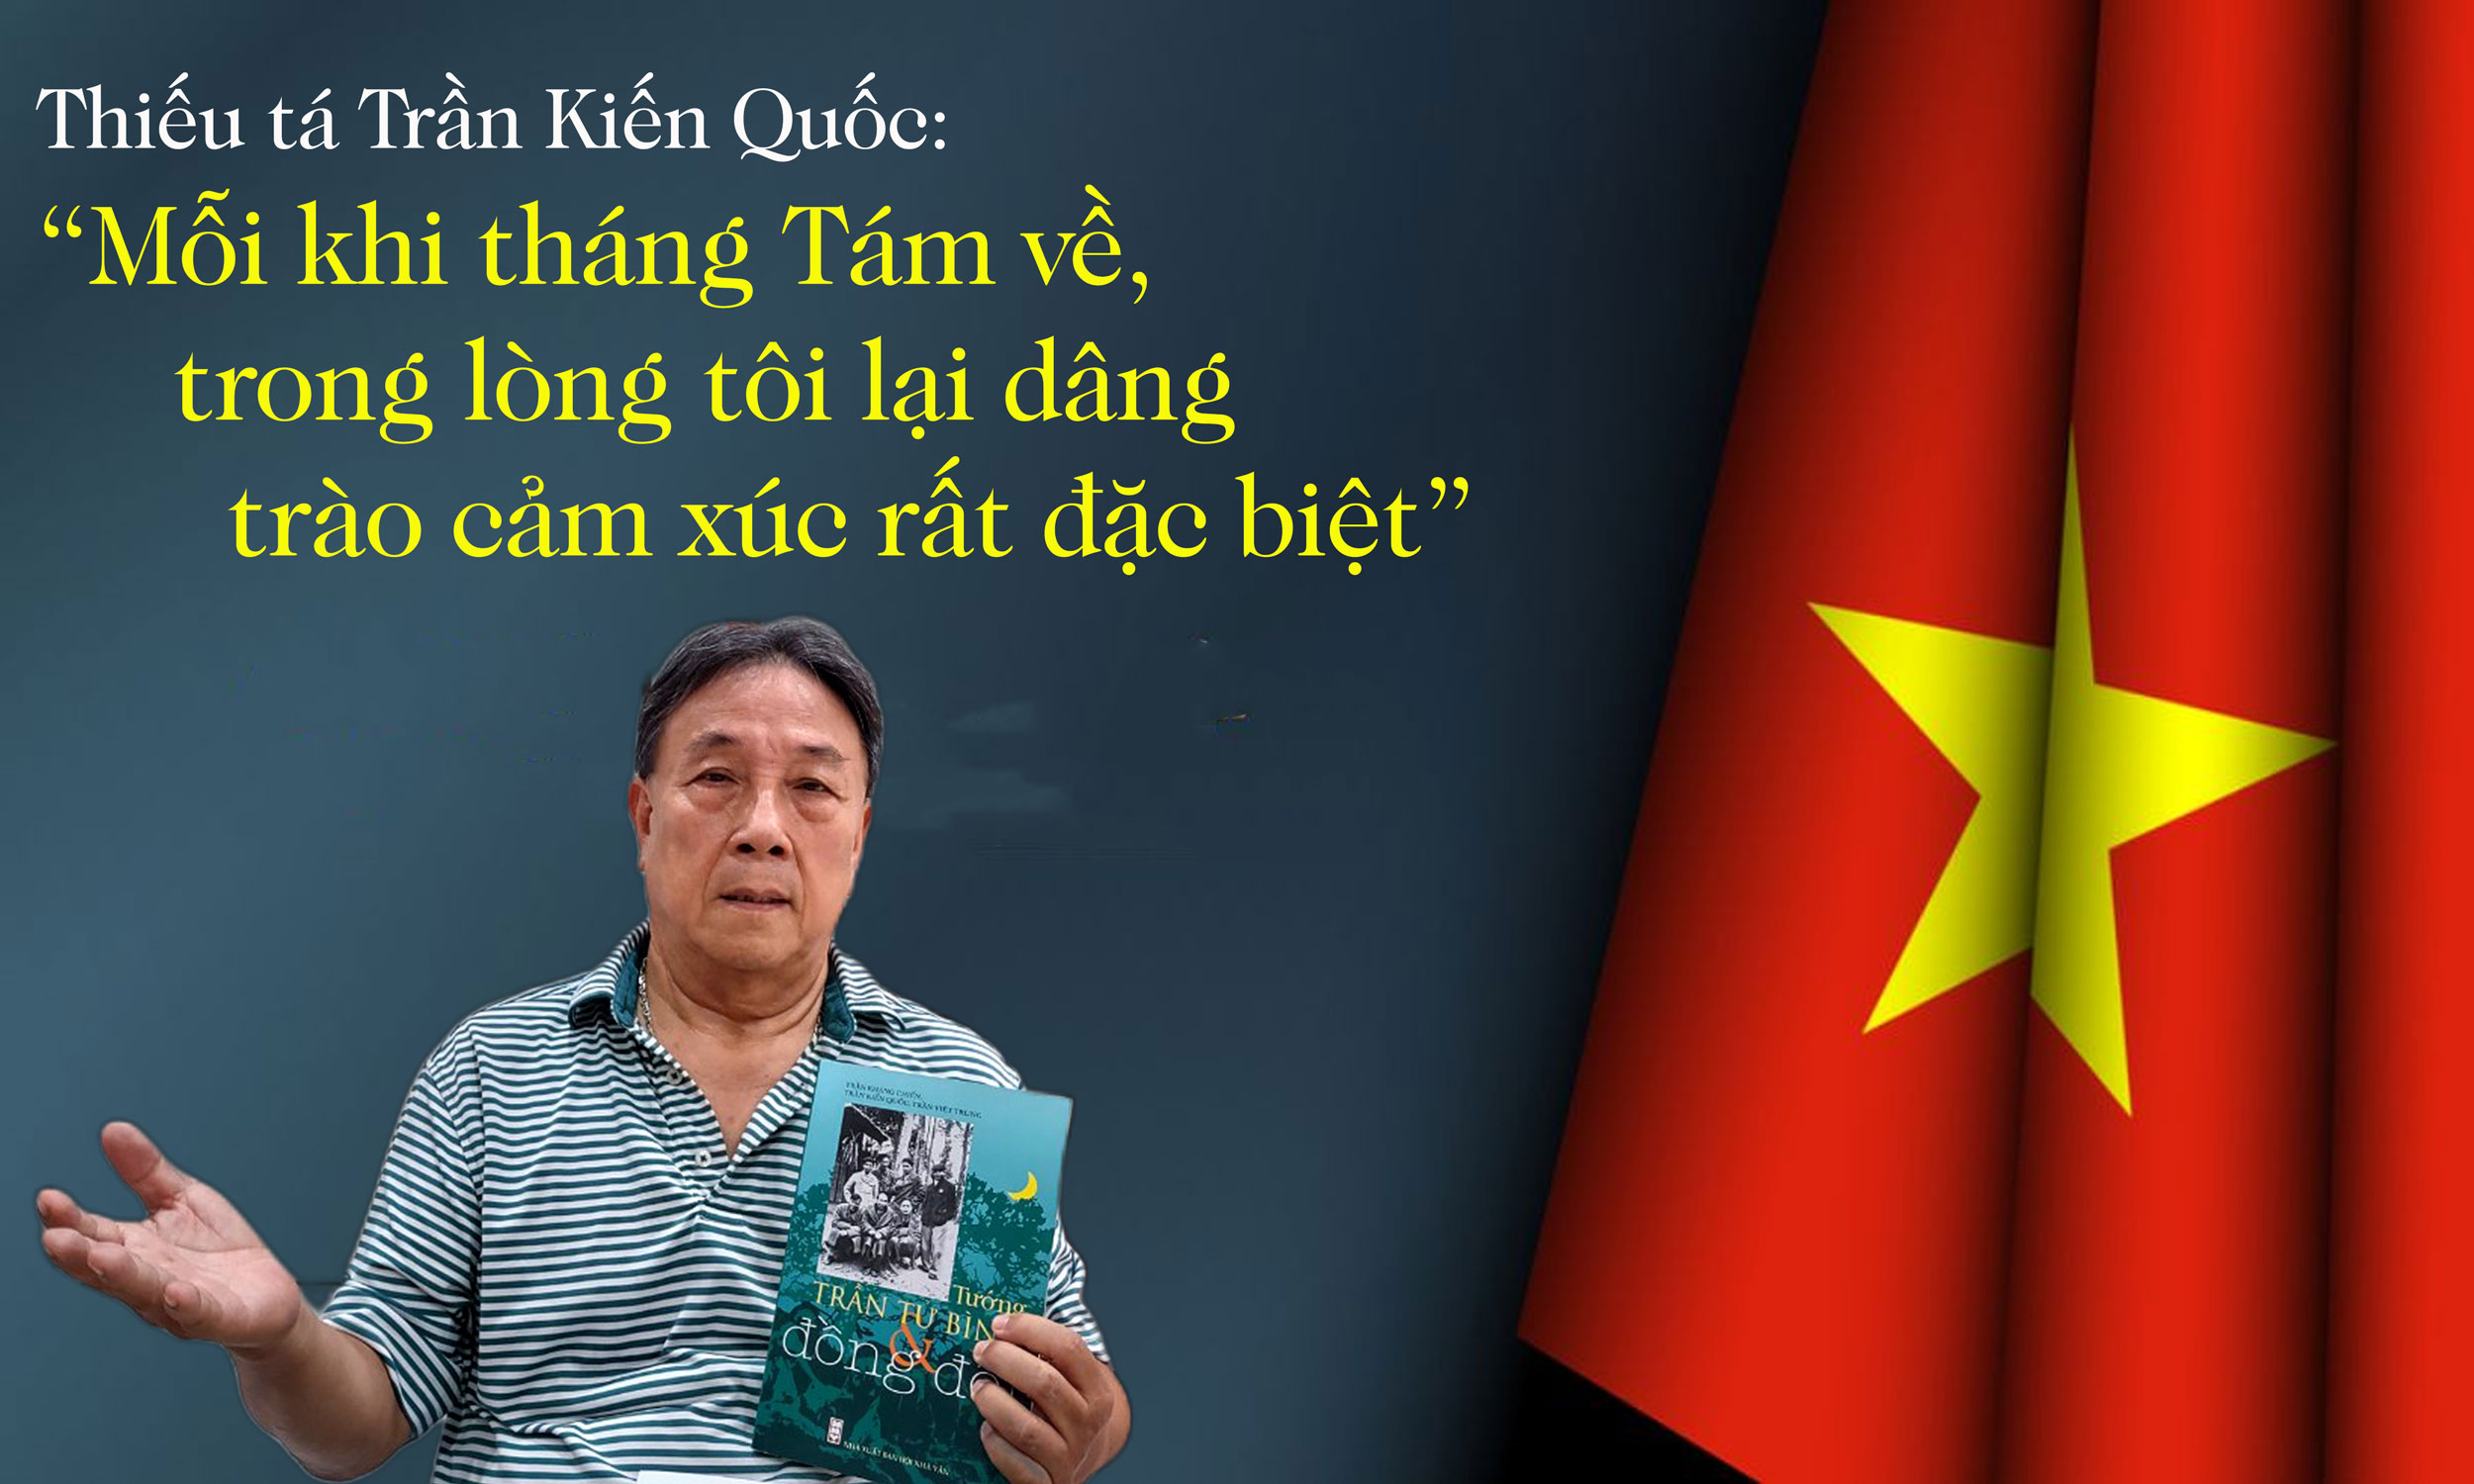 Thiếu tá Trần Kiến Quốc “Mỗi khi tháng Tám về trong lòng tôi lại dâng trào cảm xúc rất đặc biệt”